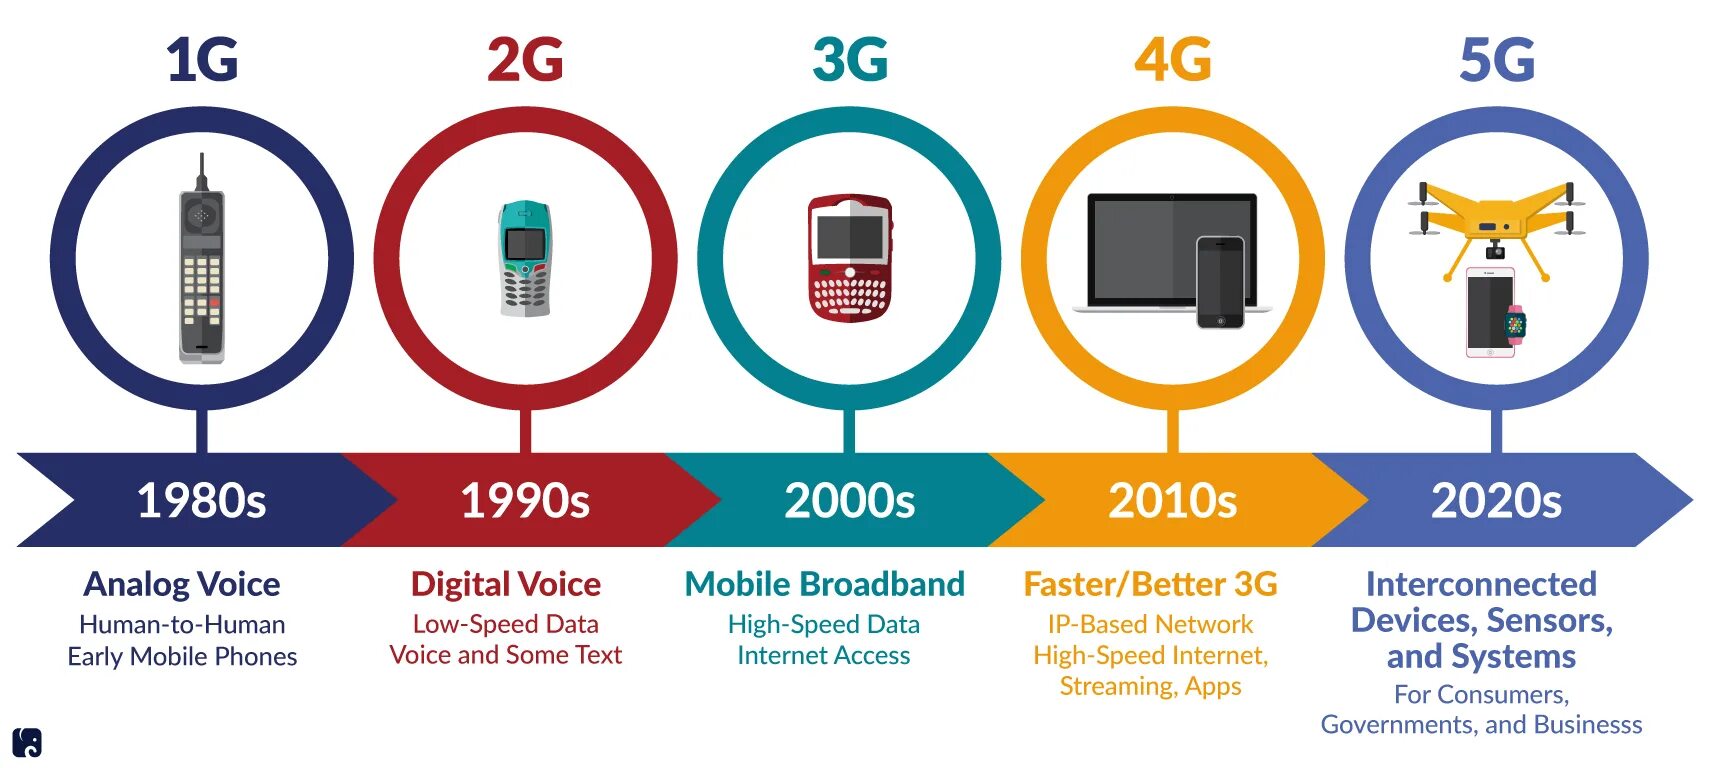 Pai 4g 4g. Поколения сотовой связи 2g 3g и 4g. Технологии сотовой связи 2g 3g 4g. 4g стандарты сотовой сети. Сотовая связь 1g 2g 3g 4g 5g.